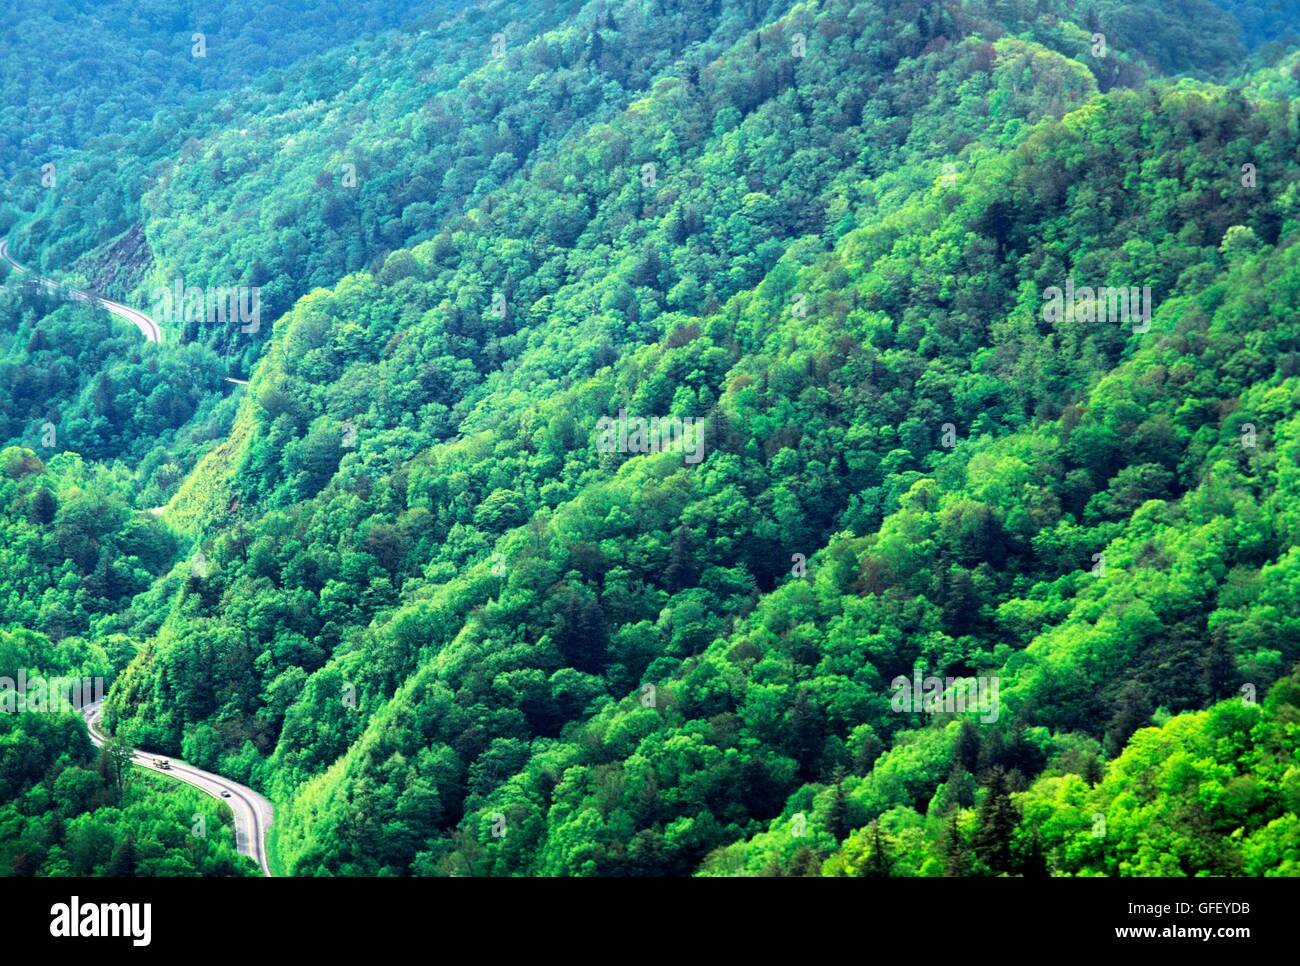 Parco nazionale di Great Smoky mountains, appalachian range, North Carolina, Stati Uniti d'America. est oltre il bosco di alberi forestali dal divario ritrovata Foto Stock